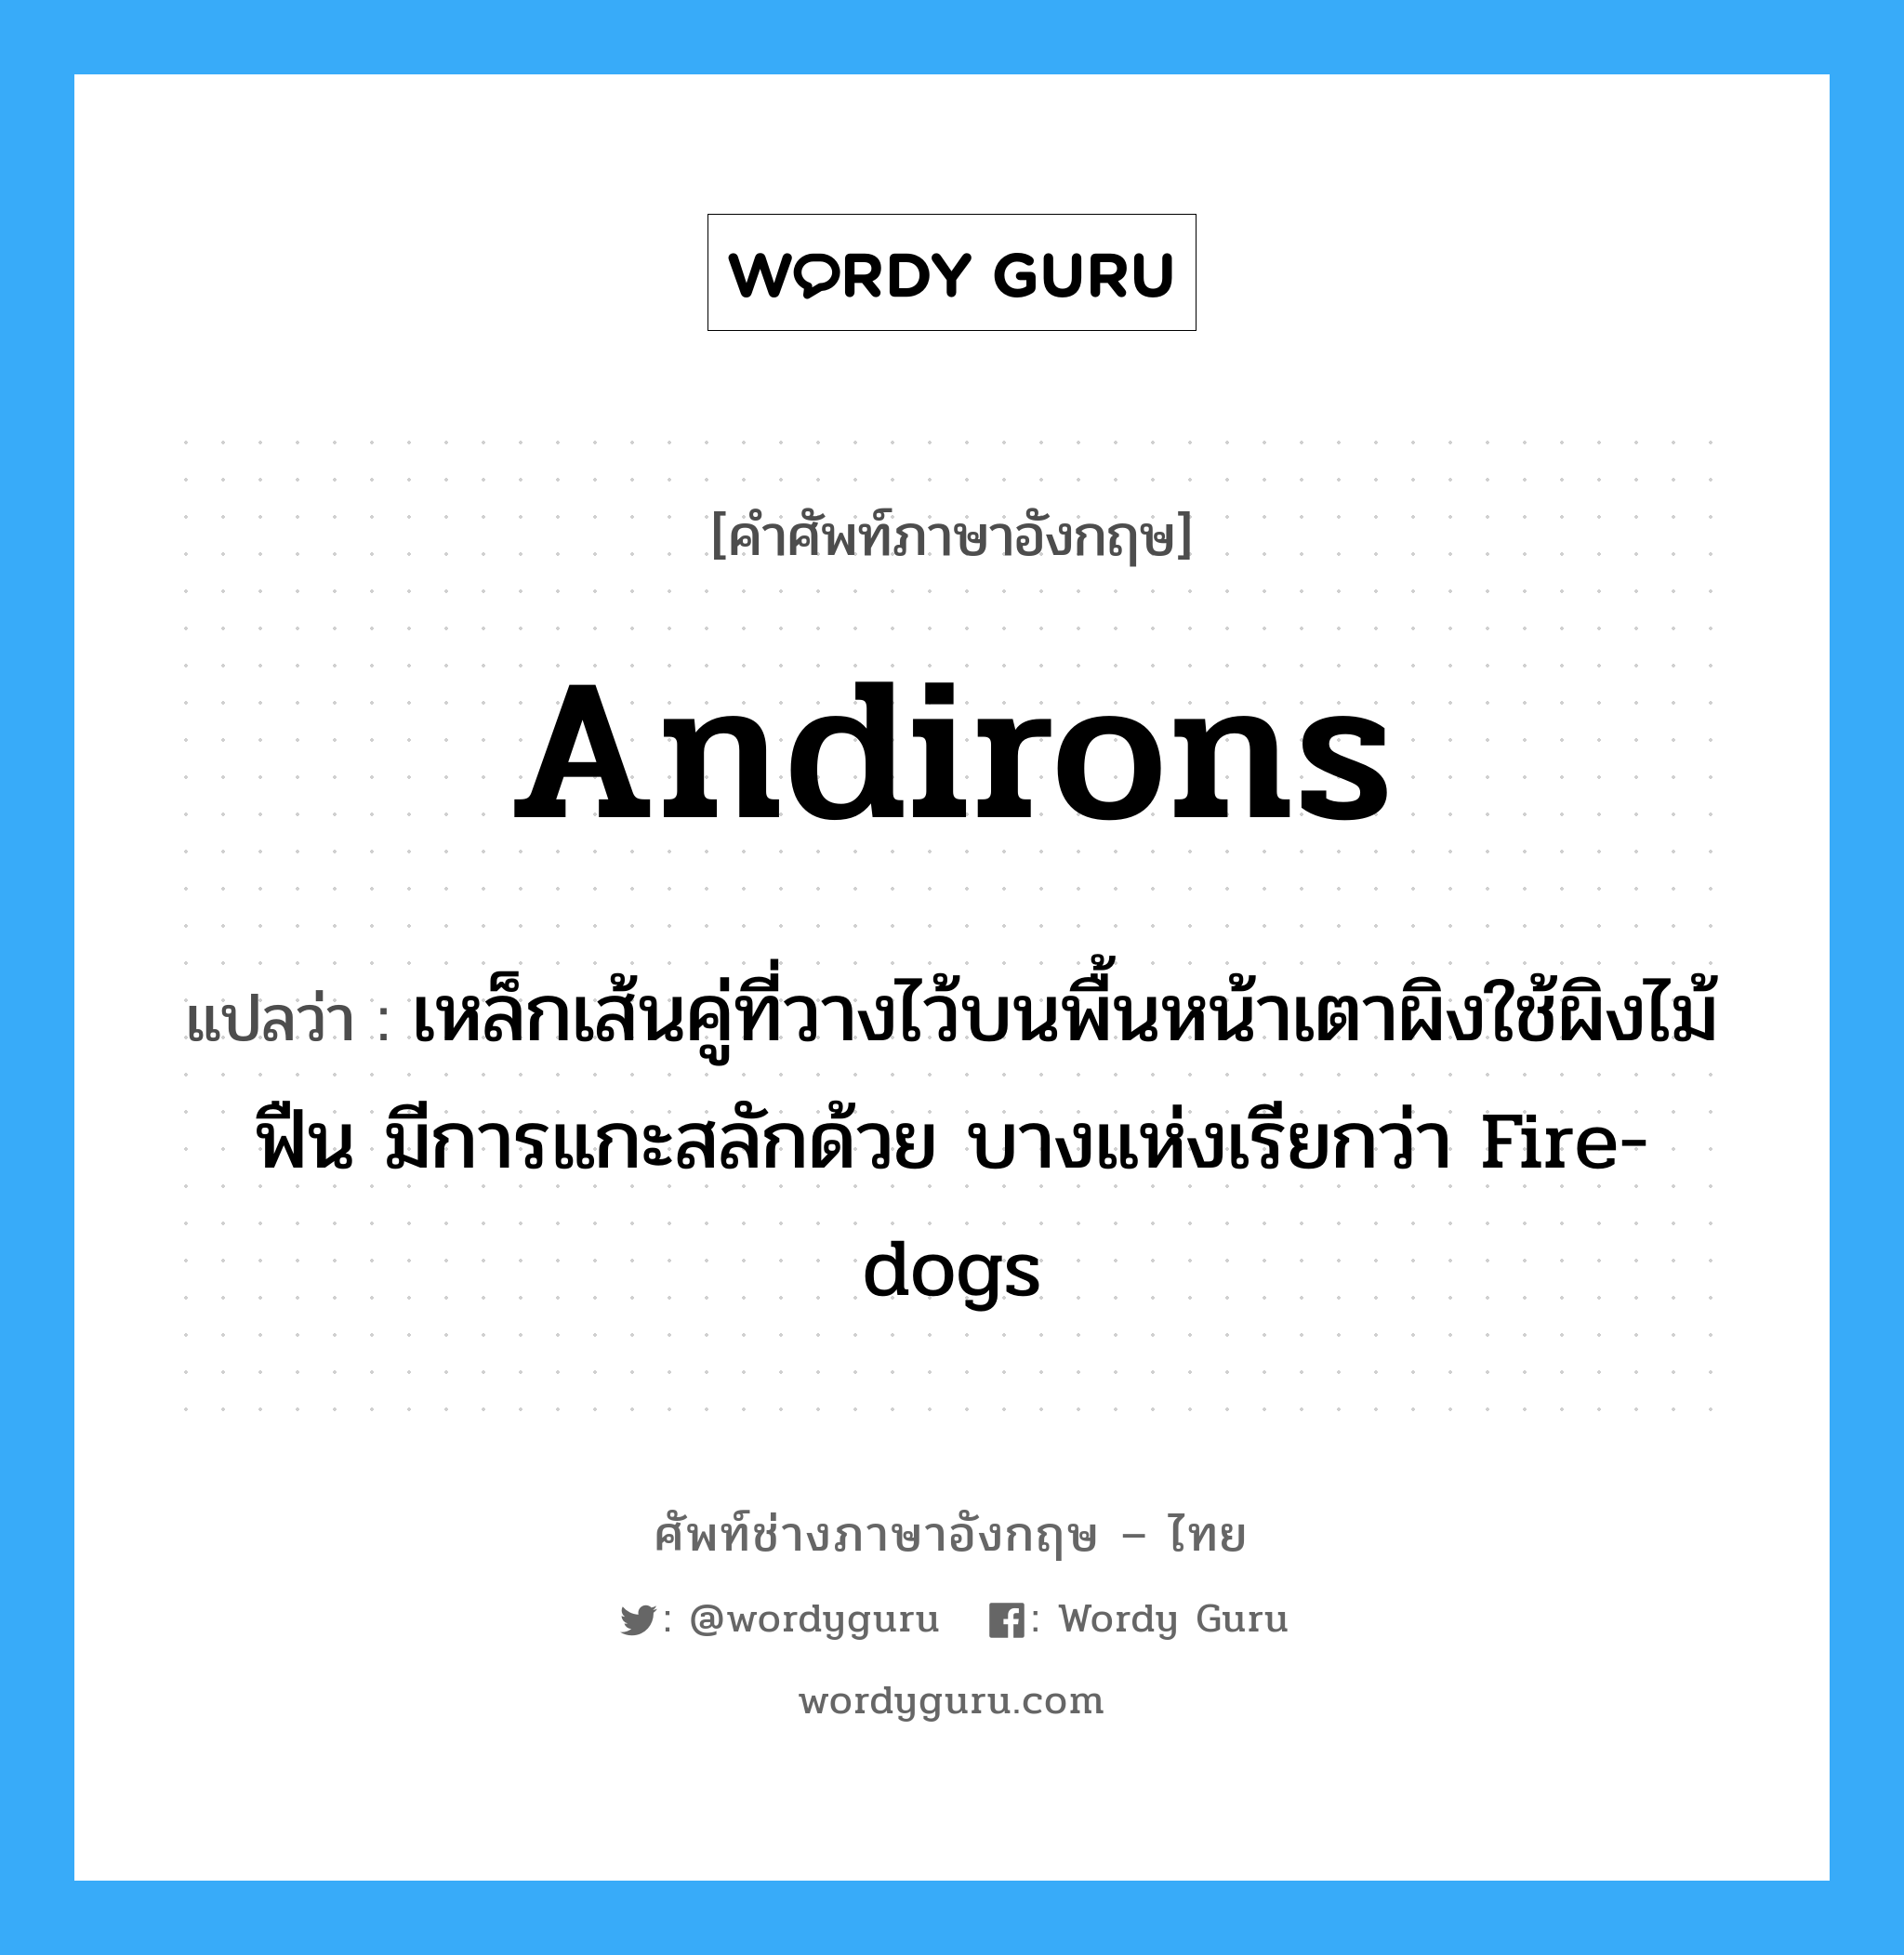 andirons แปลว่า?, คำศัพท์ช่างภาษาอังกฤษ - ไทย andirons คำศัพท์ภาษาอังกฤษ andirons แปลว่า เหล็กเส้นคู่ที่วางไว้บนพื้นหน้าเตาผิงใช้ผิงไม้ฟืน มีการแกะสลักด้วย บางแห่งเรียกว่า Fire-dogs